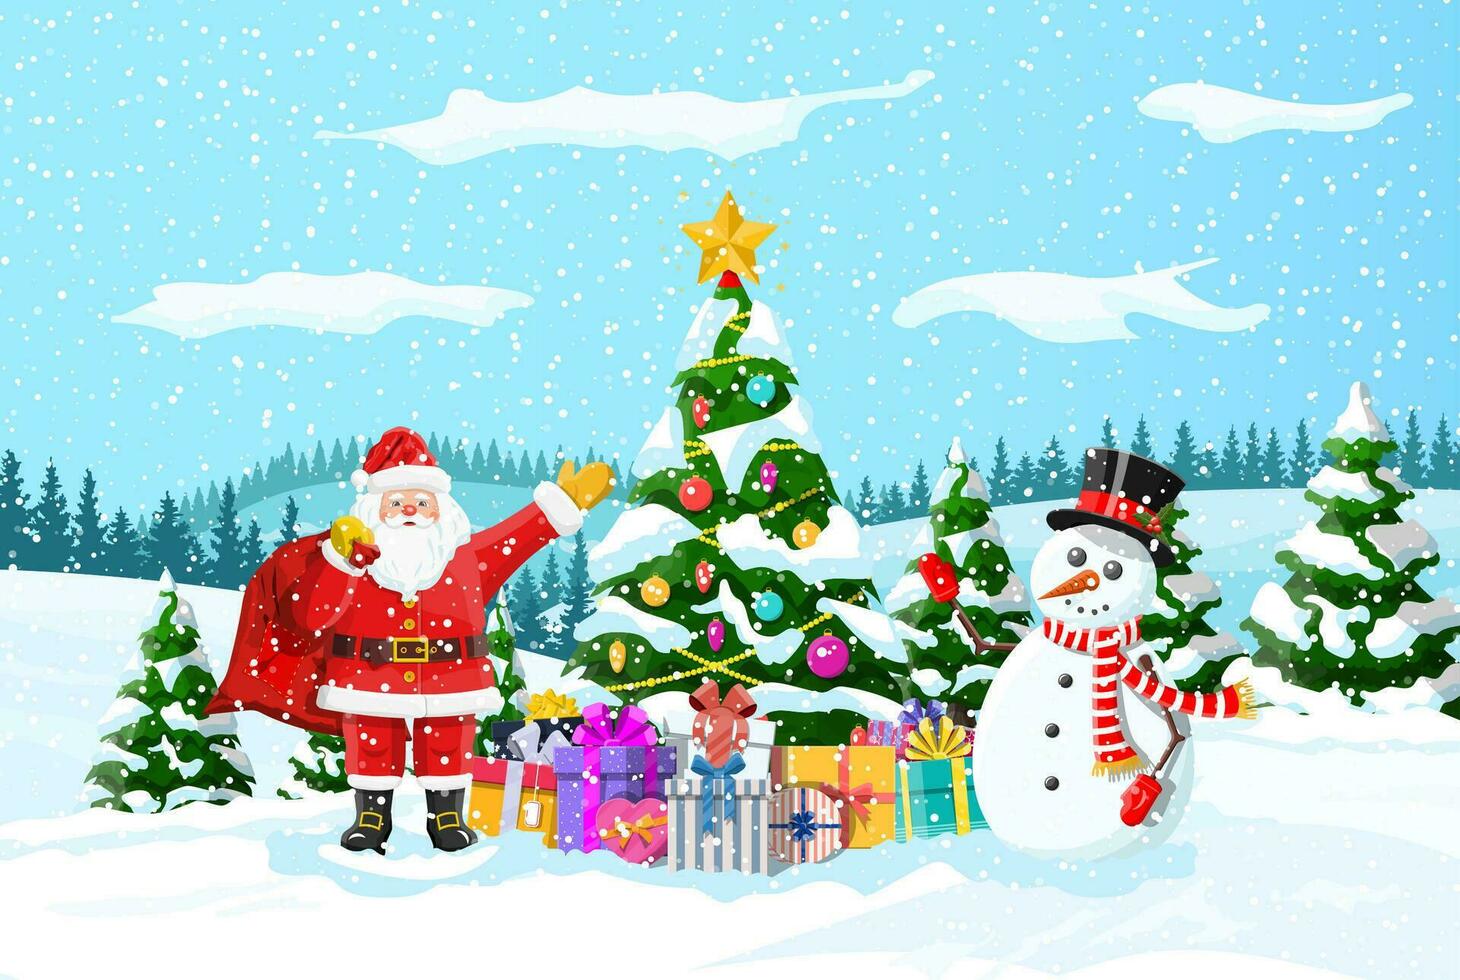 Navidad antecedentes. Navidad árbol guirnaldas pelotas regalo cajas Papa Noel y muñeco de nieve. invierno paisaje abeto arboles bosque nevando nuevo año celebracion contento Navidad día festivo. vector ilustración plano estilo